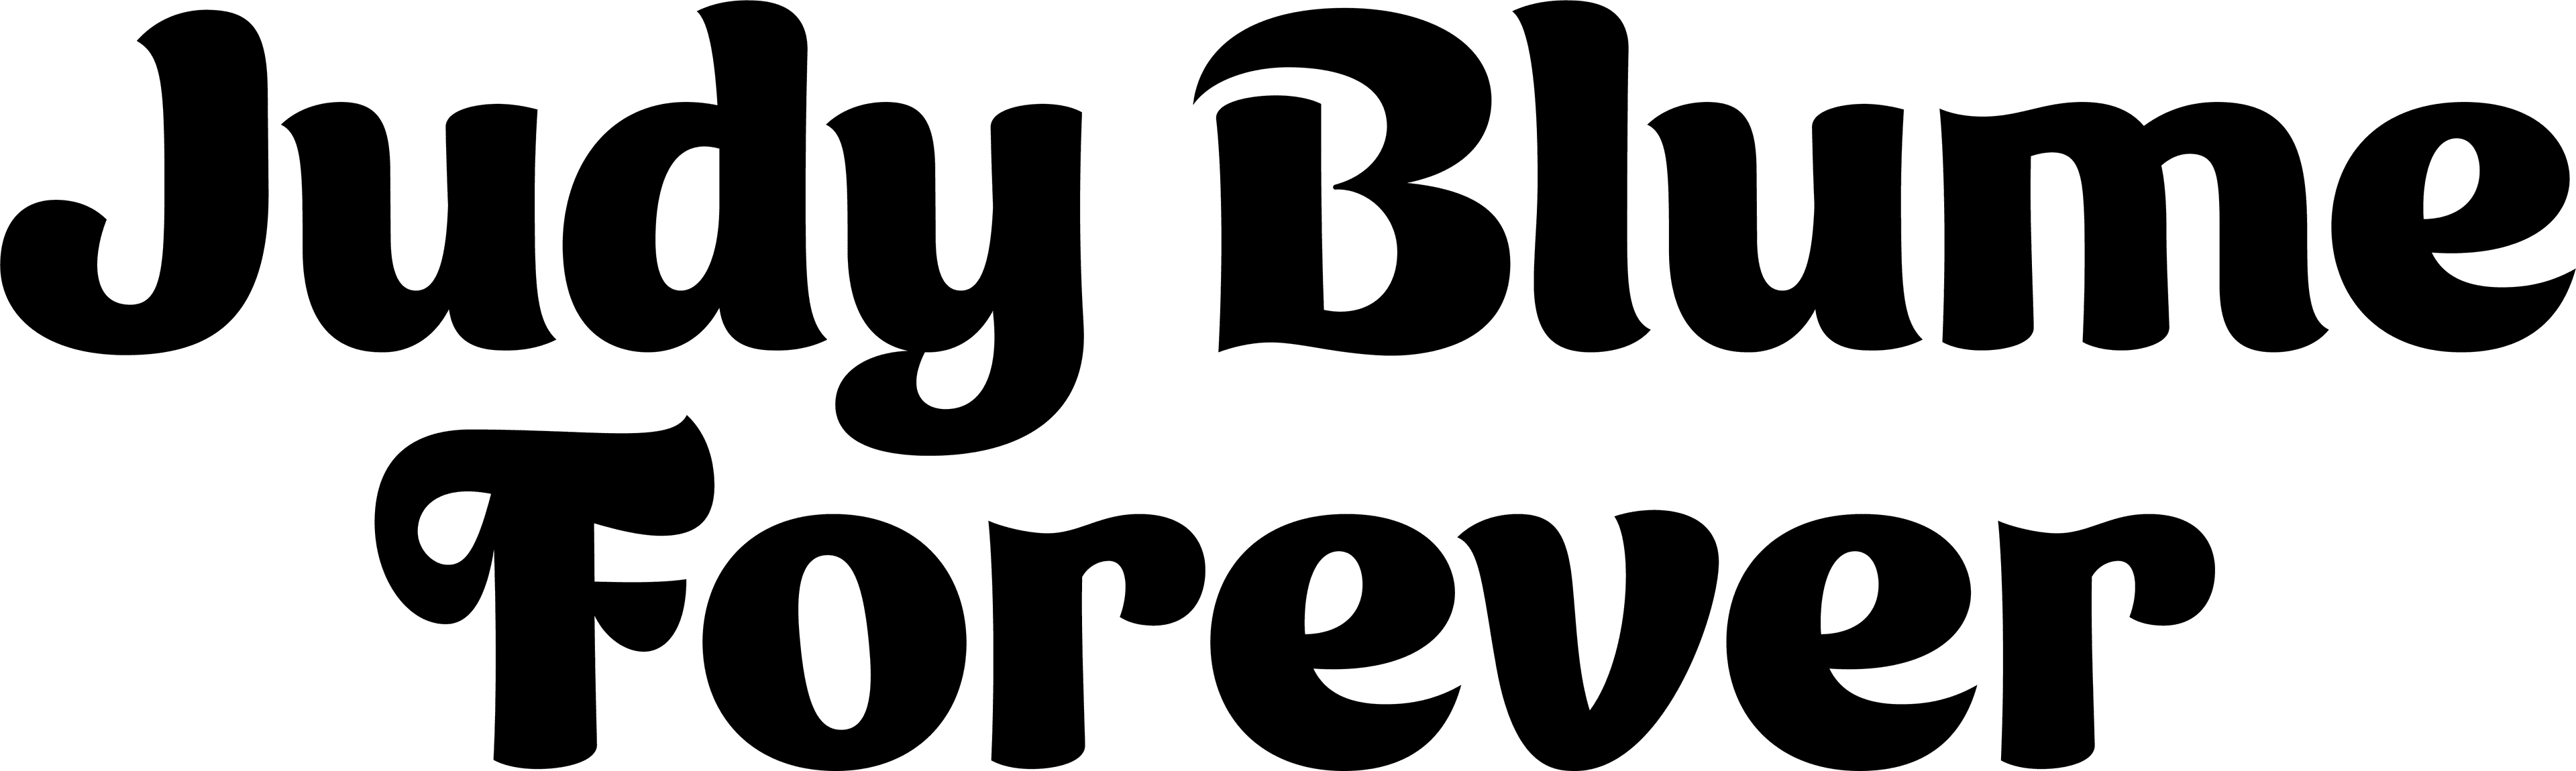 Judy Blume Forever logo